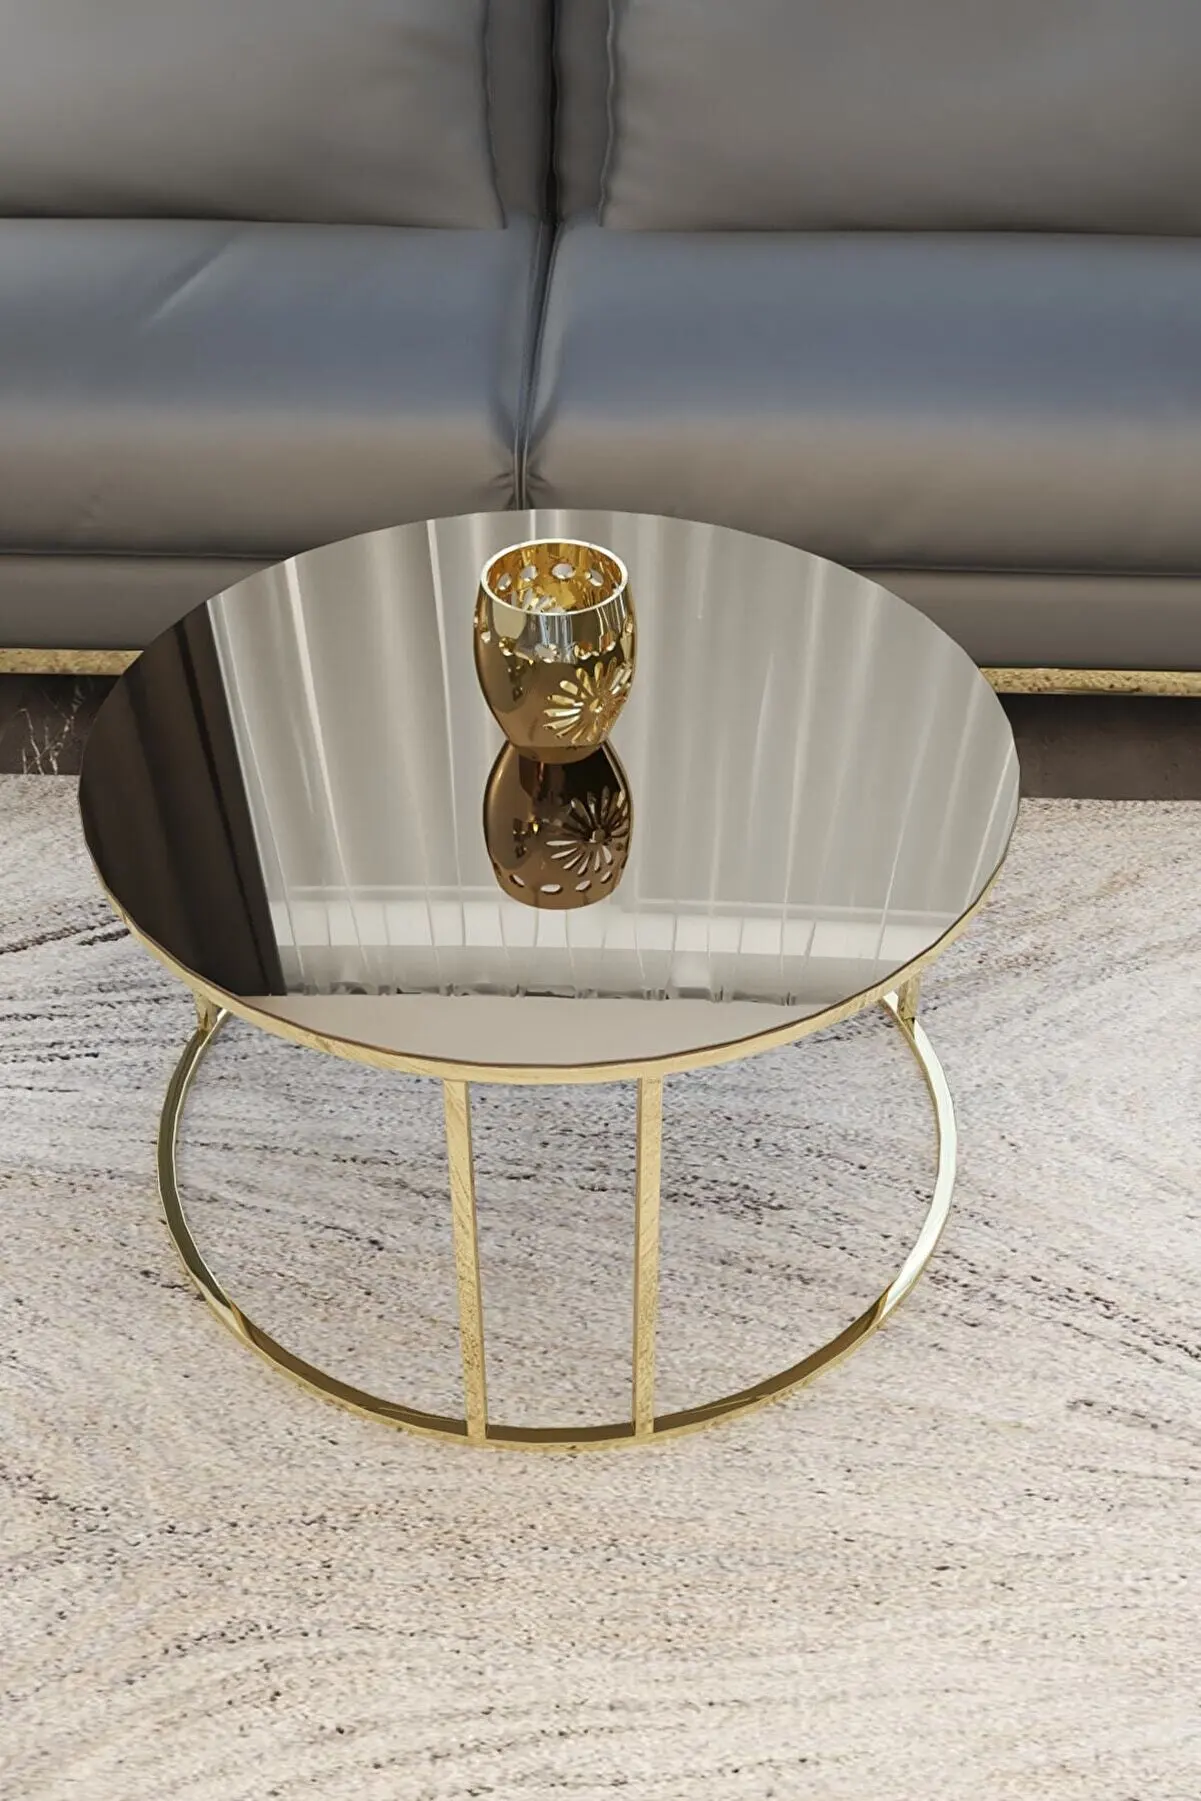 

Современный журнальный столик в скандинавском стиле, современный роскошный вложенный журнальный столик, тумбочка, кофейный сервиз, стол для гостиной